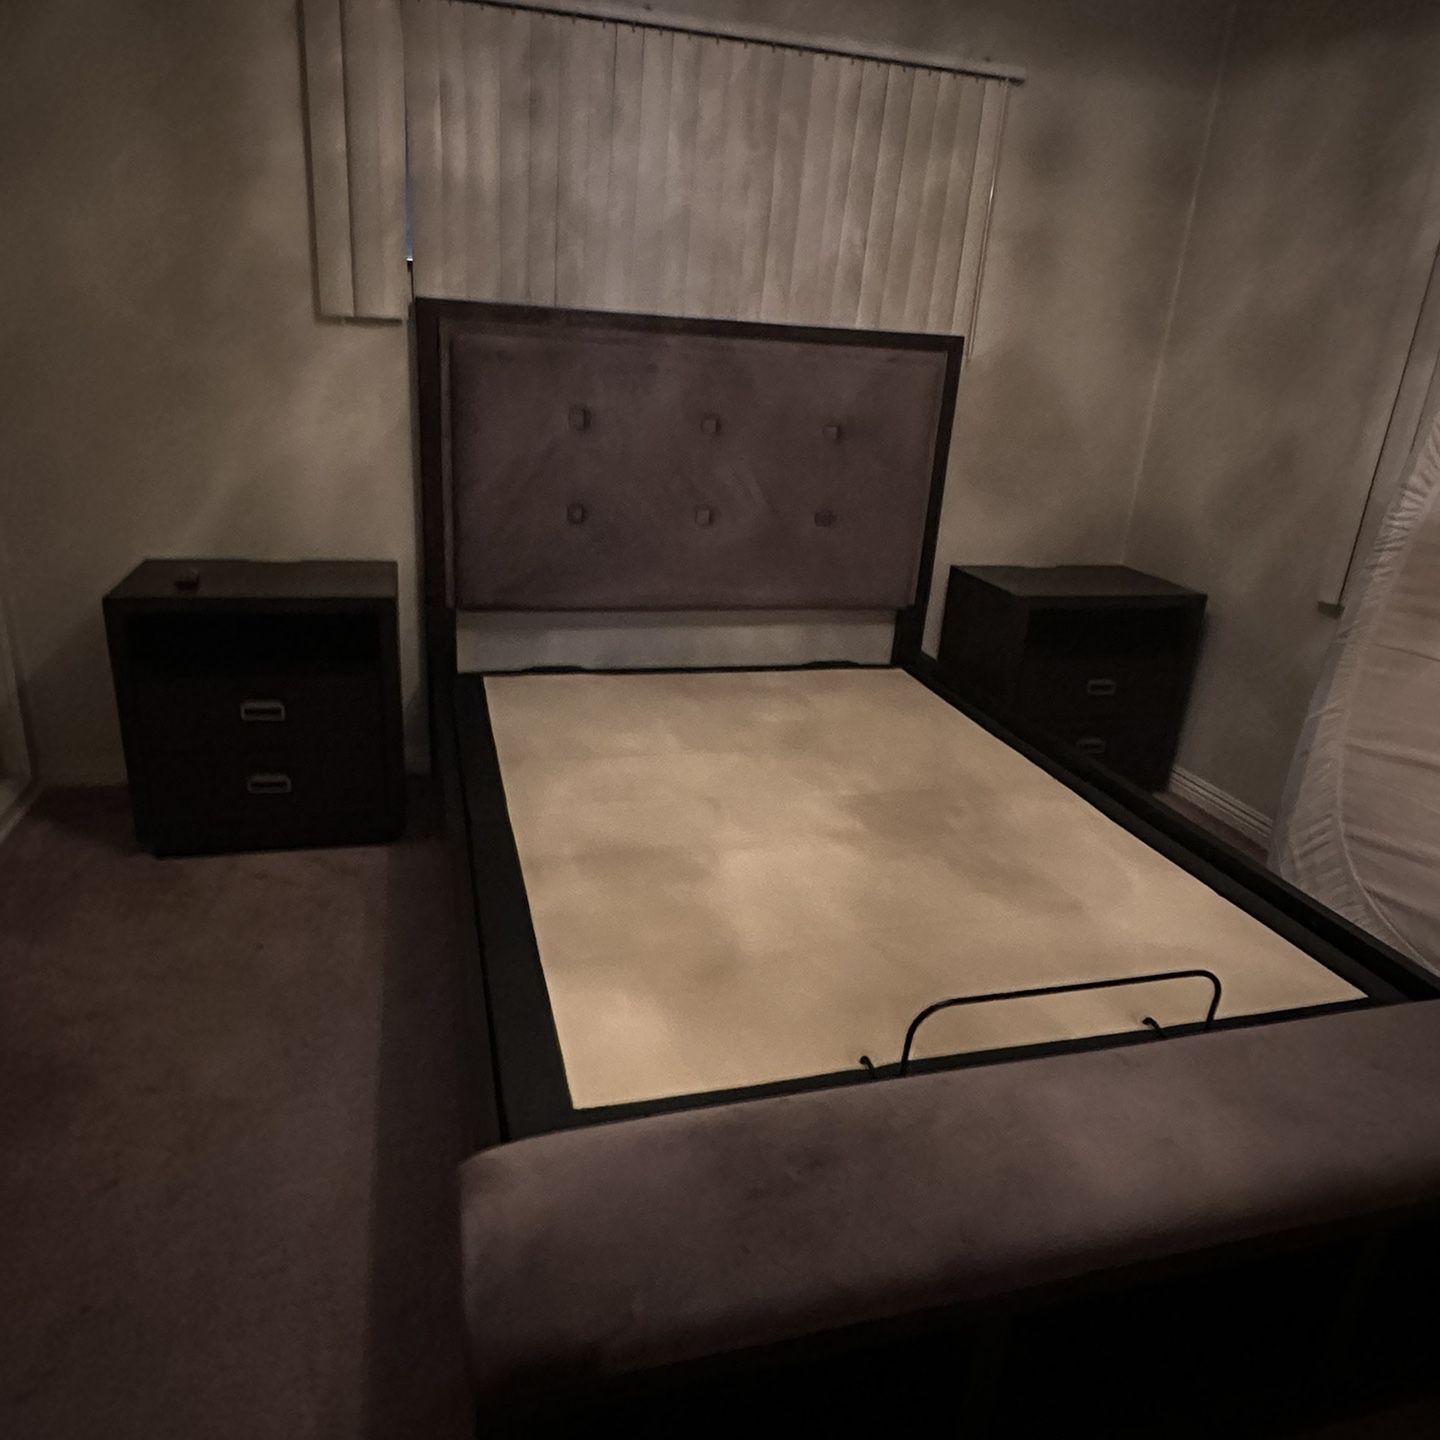 Bed frame, Ergo Adjustable Base, Night Stand, Dresser